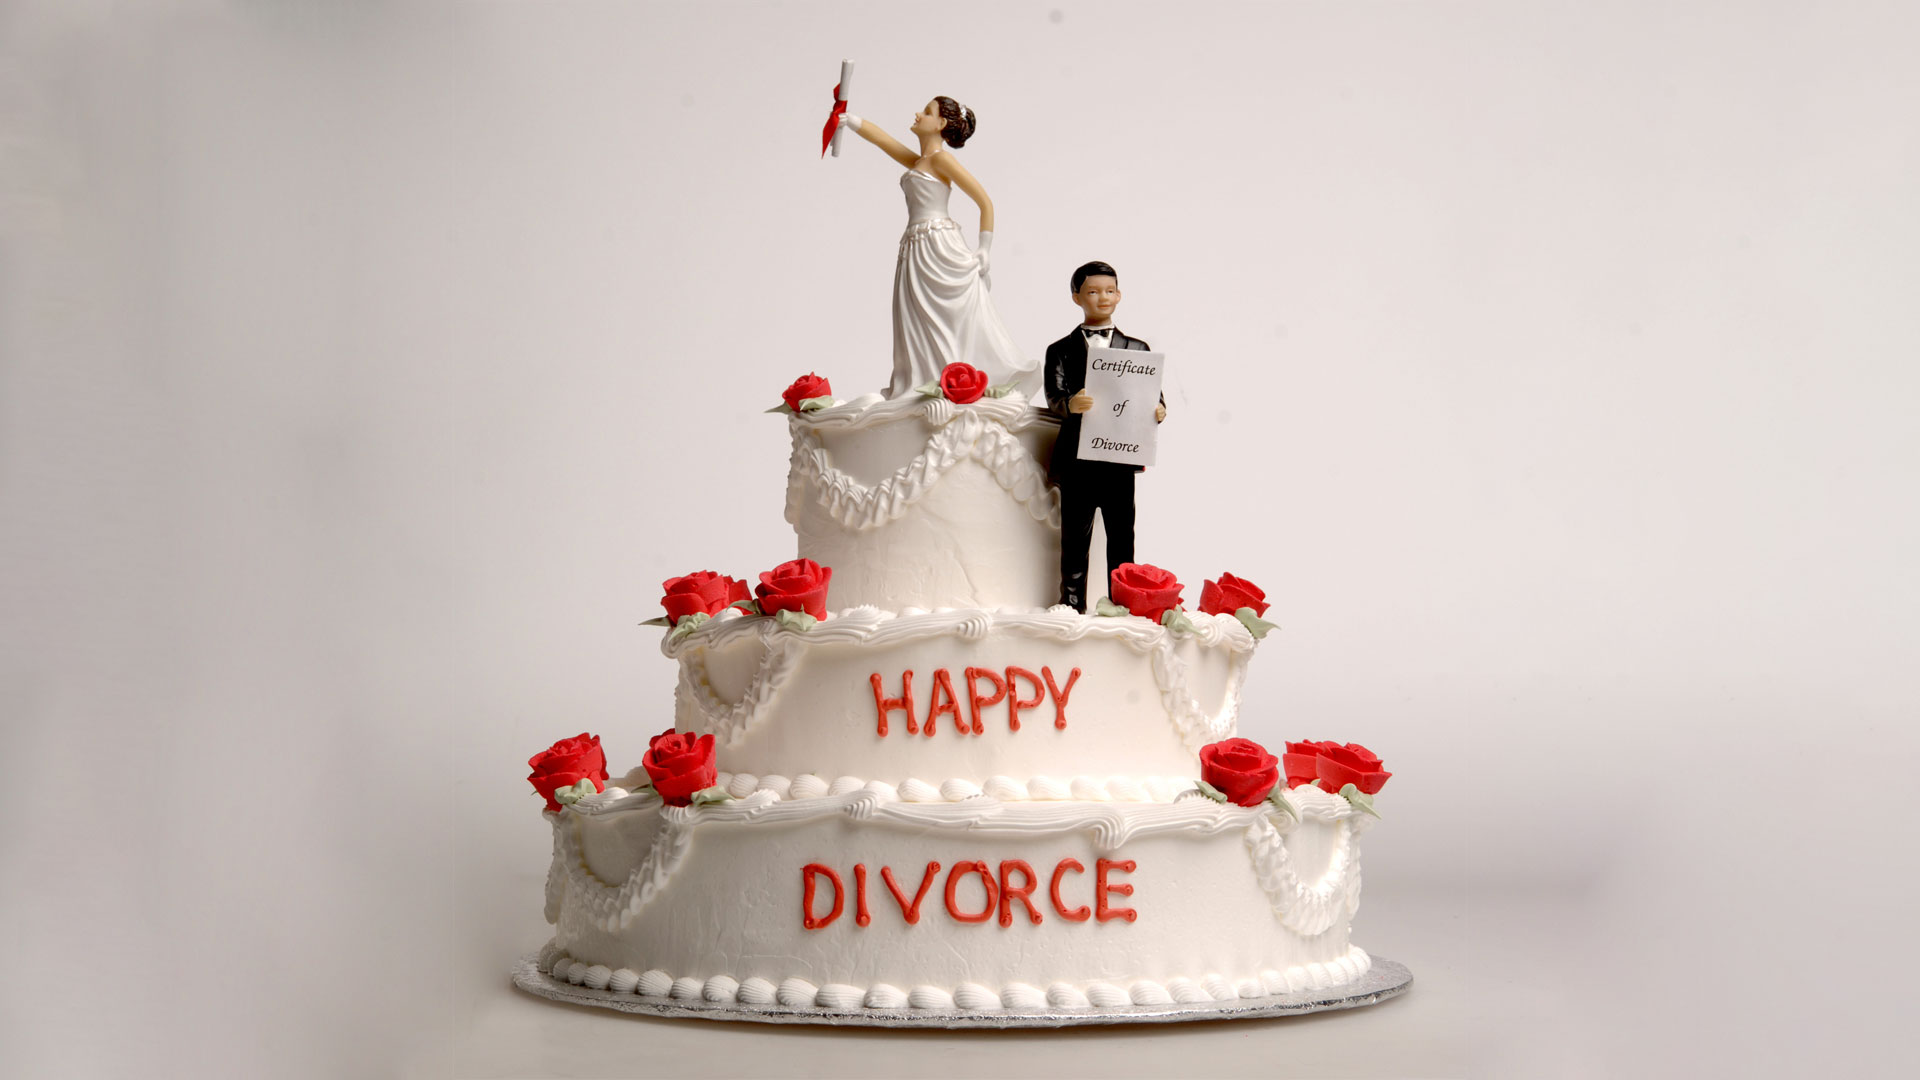 Fiestas de divorcio: las razones de un ritual que celebra la vida luego del matrimonio